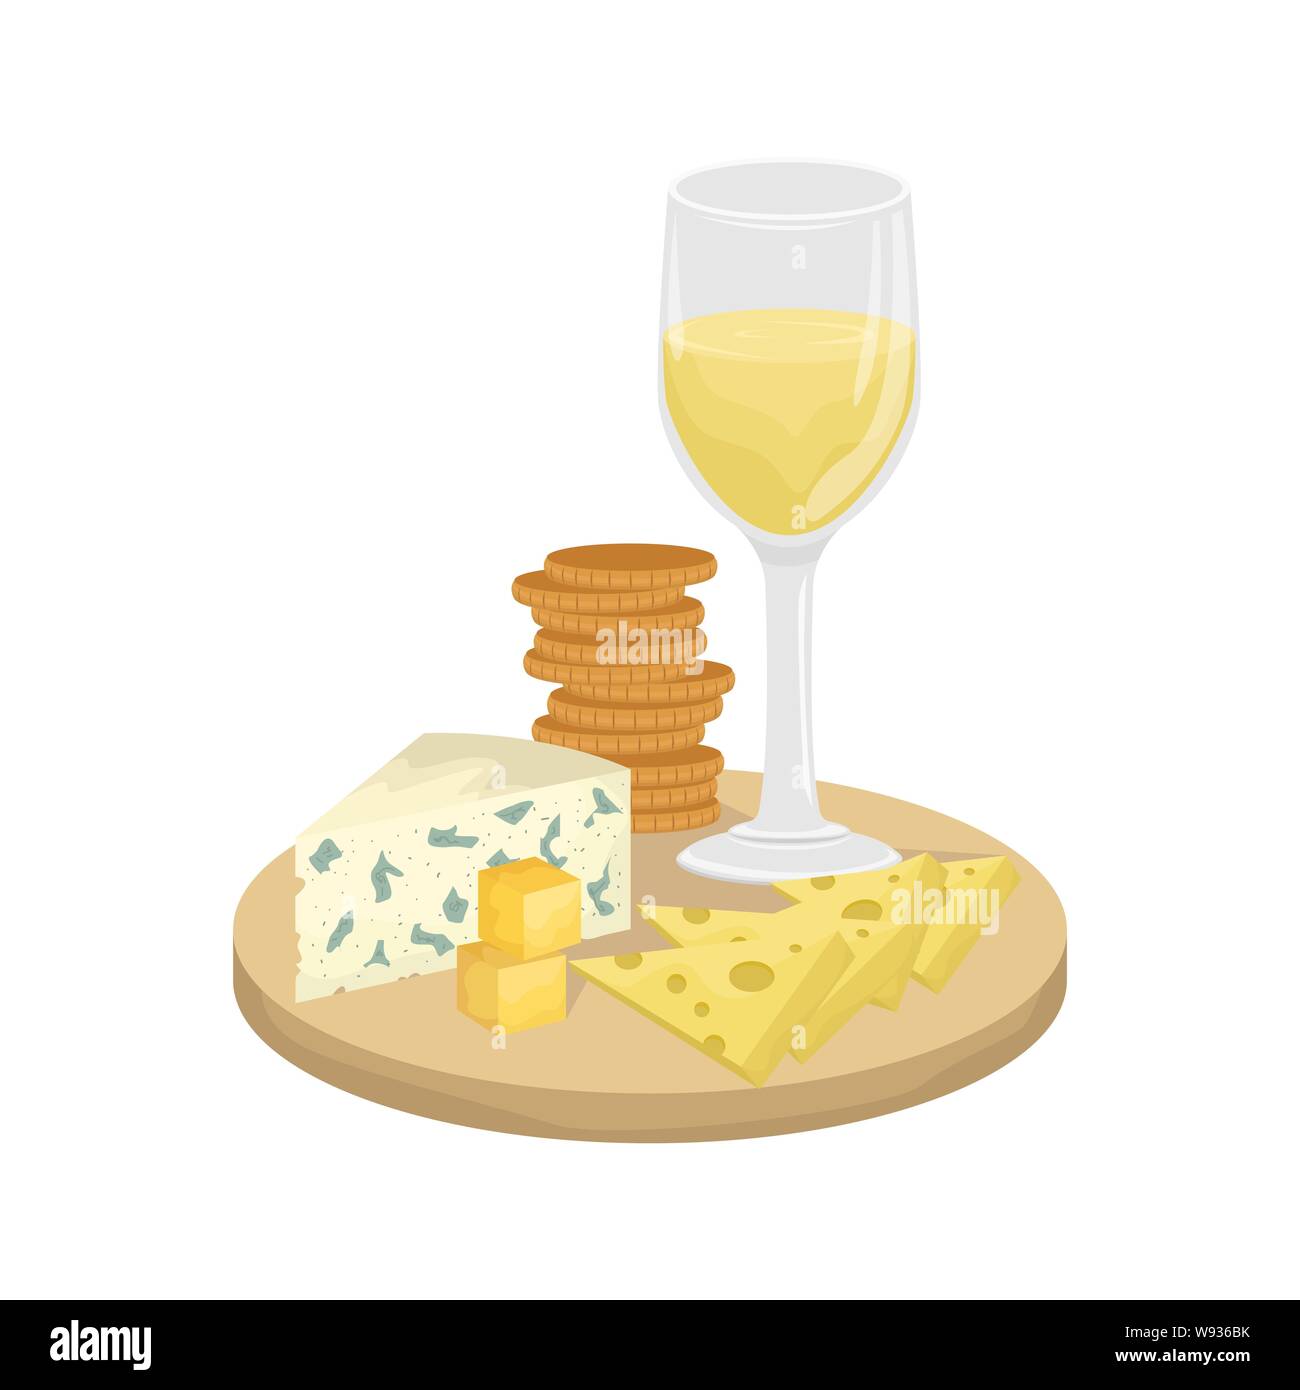 Ein Glas Weisswein, Käseplatte auf einem Holzbrett mit Crackern. Maasdam, Gouda, Roquefort. Vector Illustration. Stock Vektor